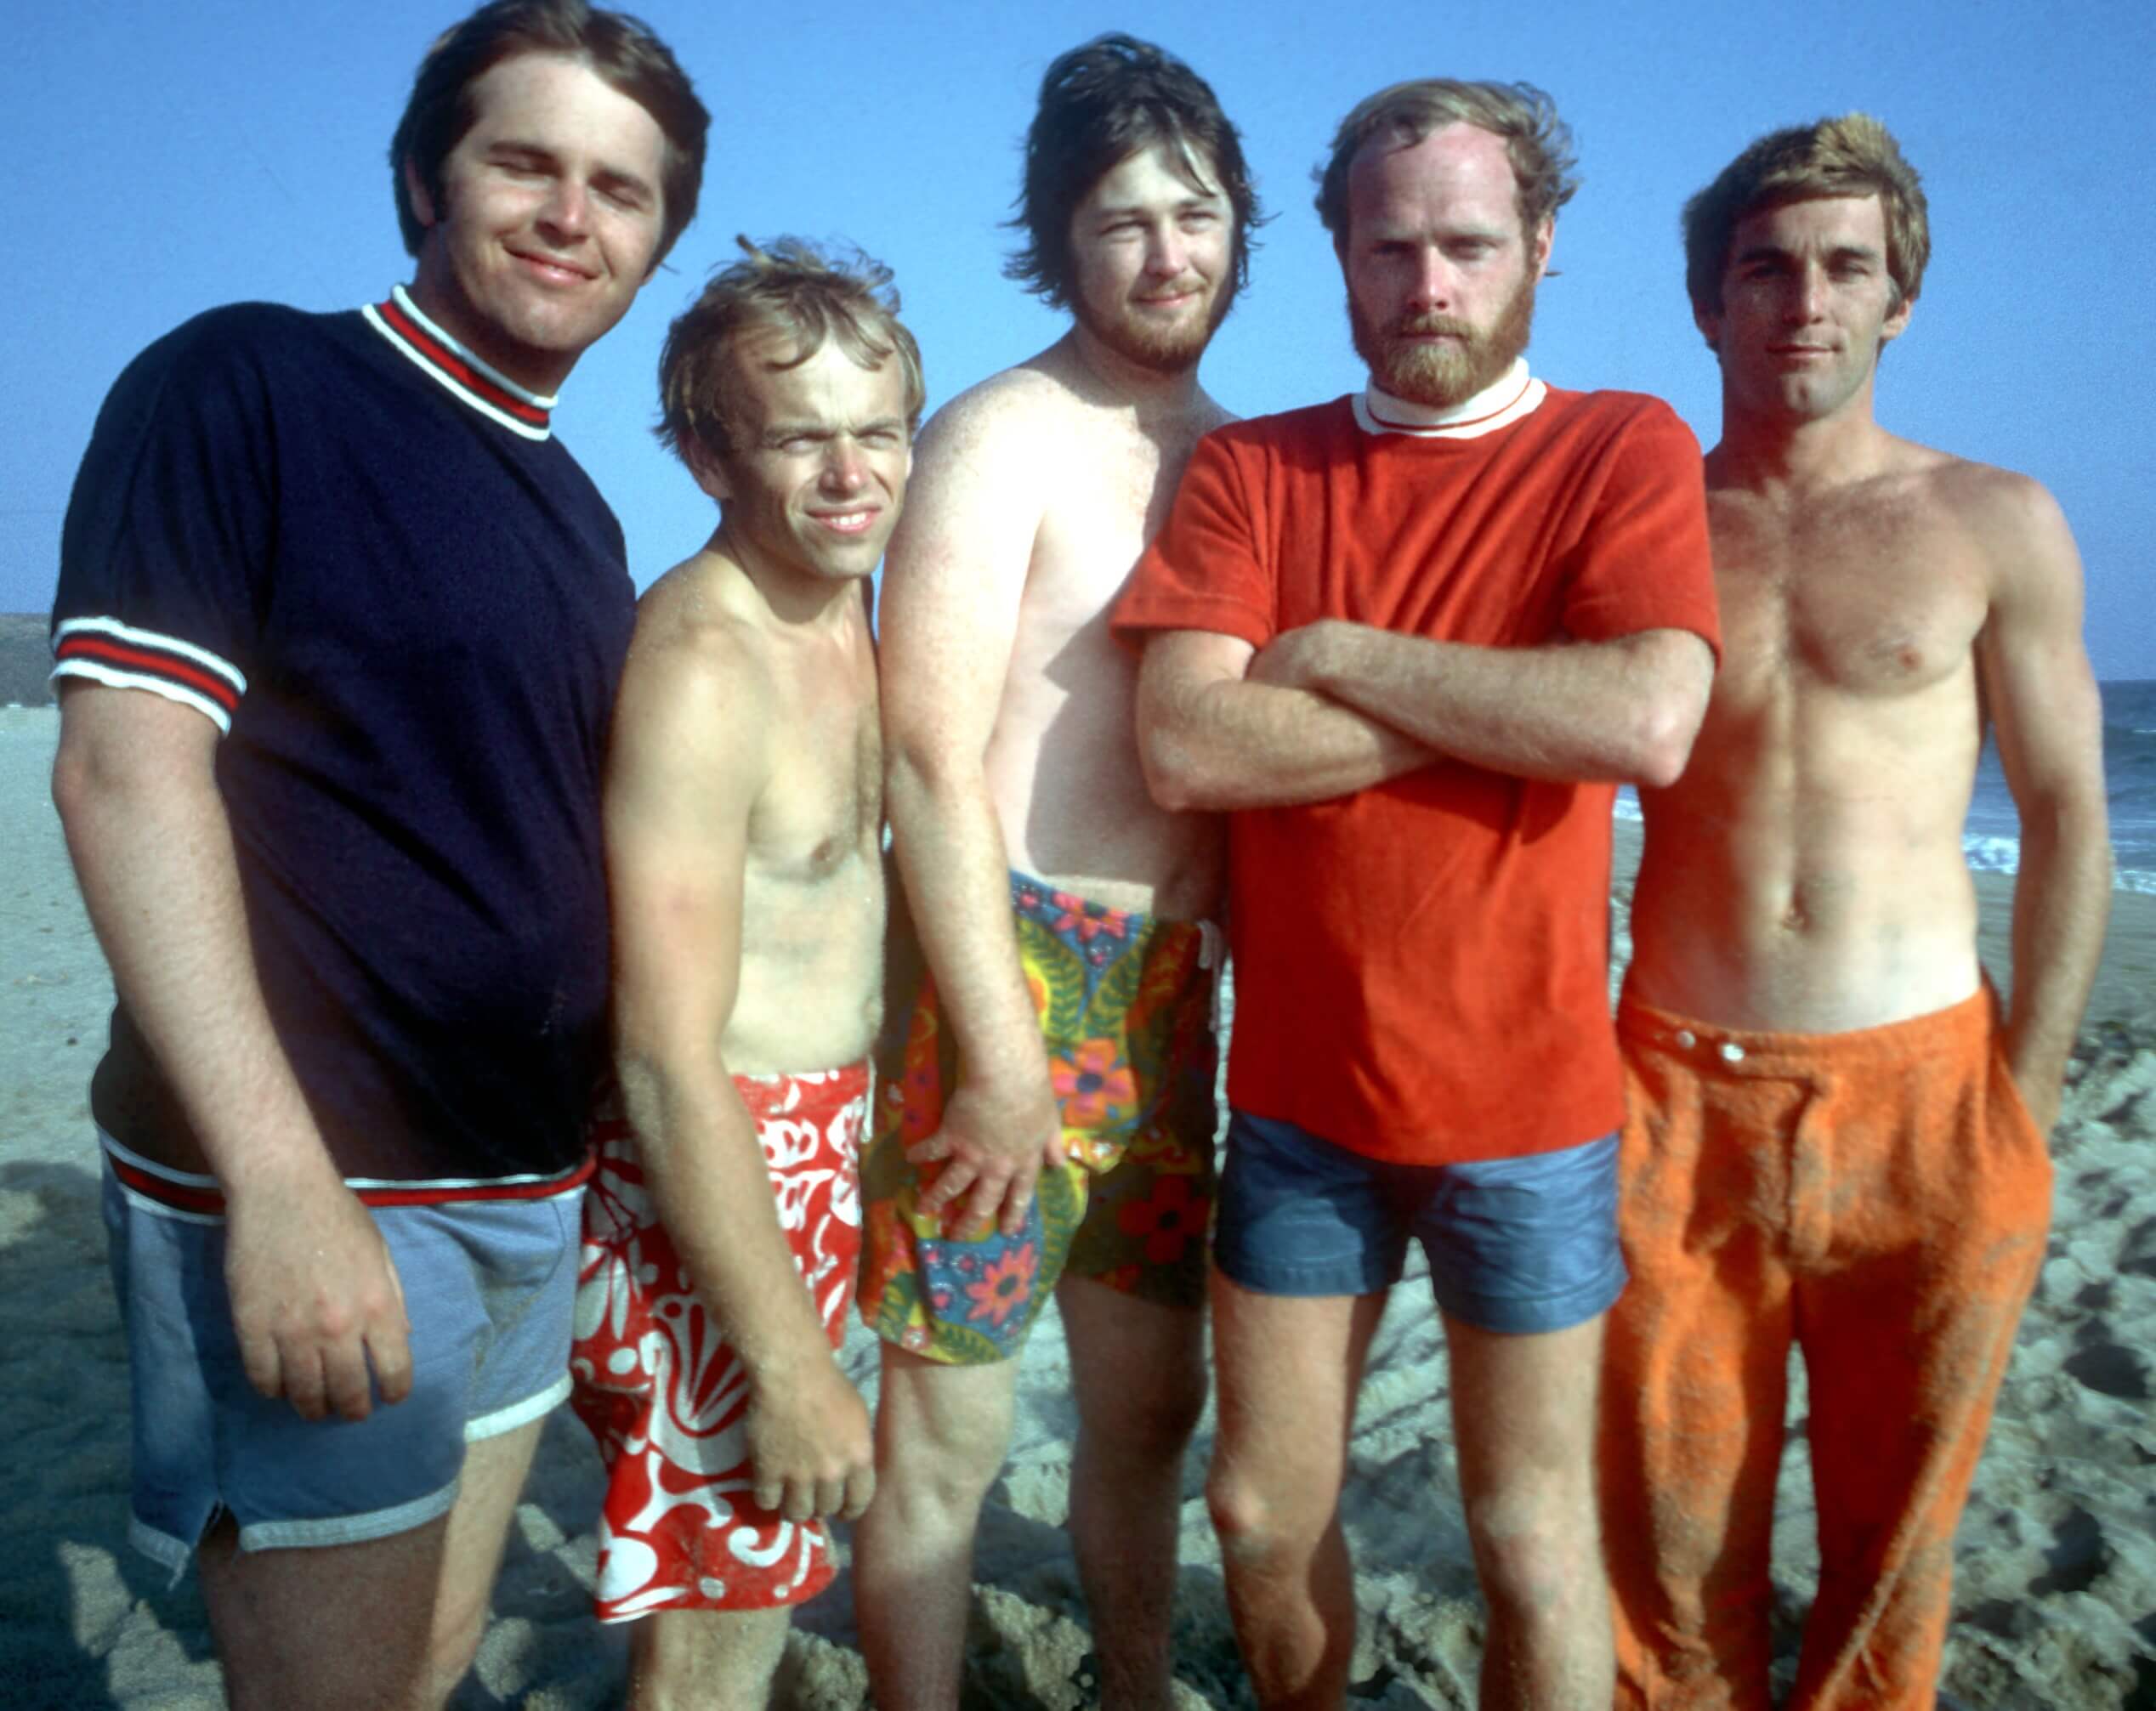 The Beach Boys on a beach during the "Good Vibrations" era